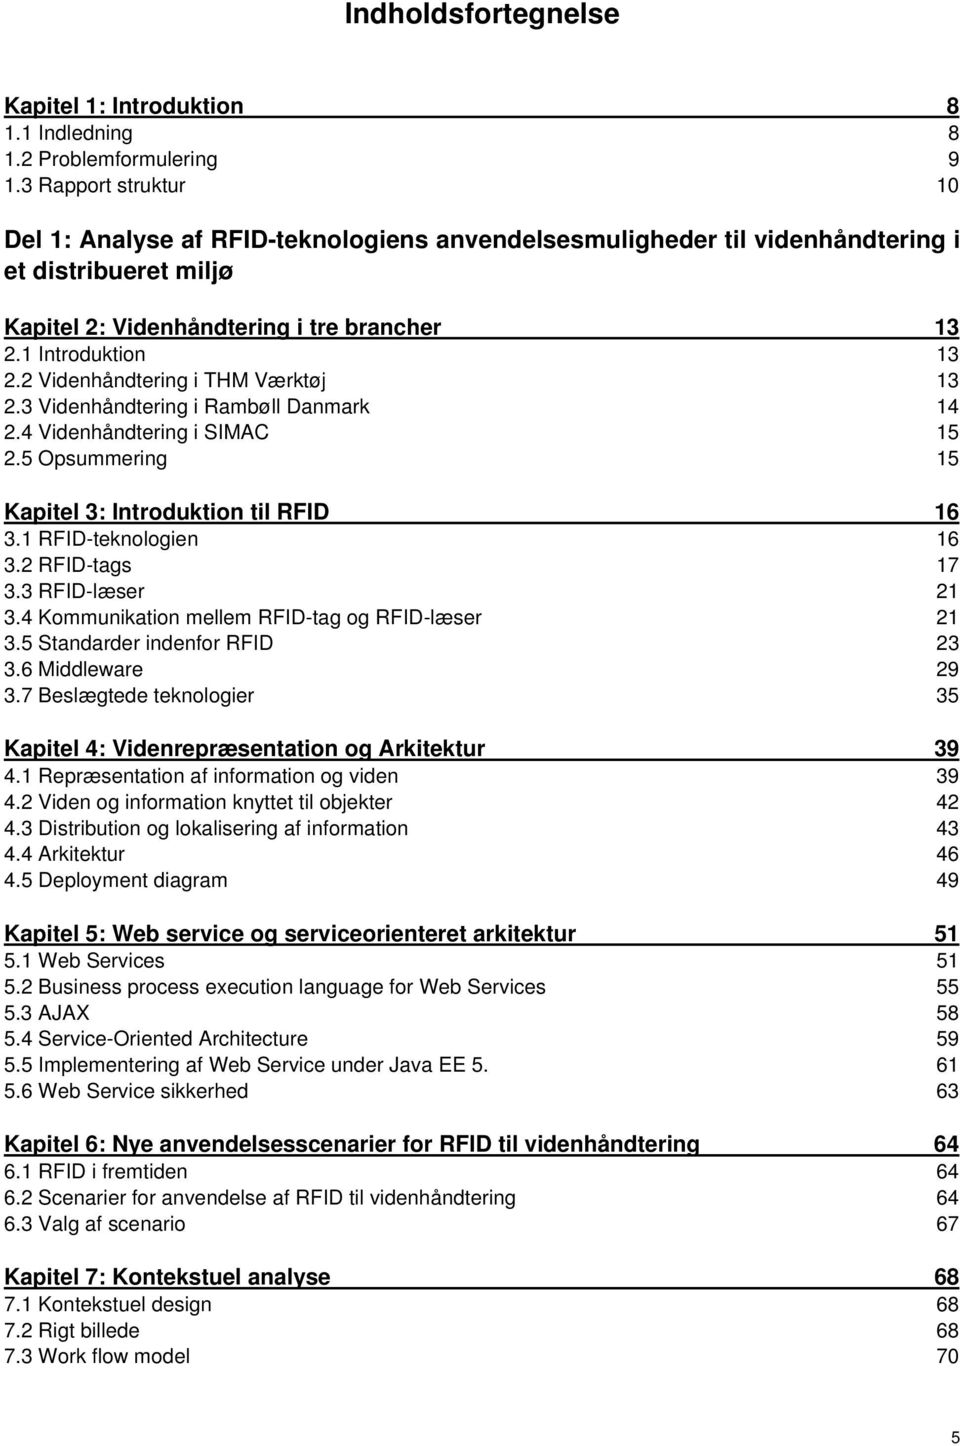 2 Videnhåndtering i THM Værktøj 13 2.3 Videnhåndtering i Rambøll Danmark 14 2.4 Videnhåndtering i SIMAC 15 2.5 Opsummering 15 Kapitel 3: Introduktion til RFID 16 3.1 RFID-teknologien 16 3.